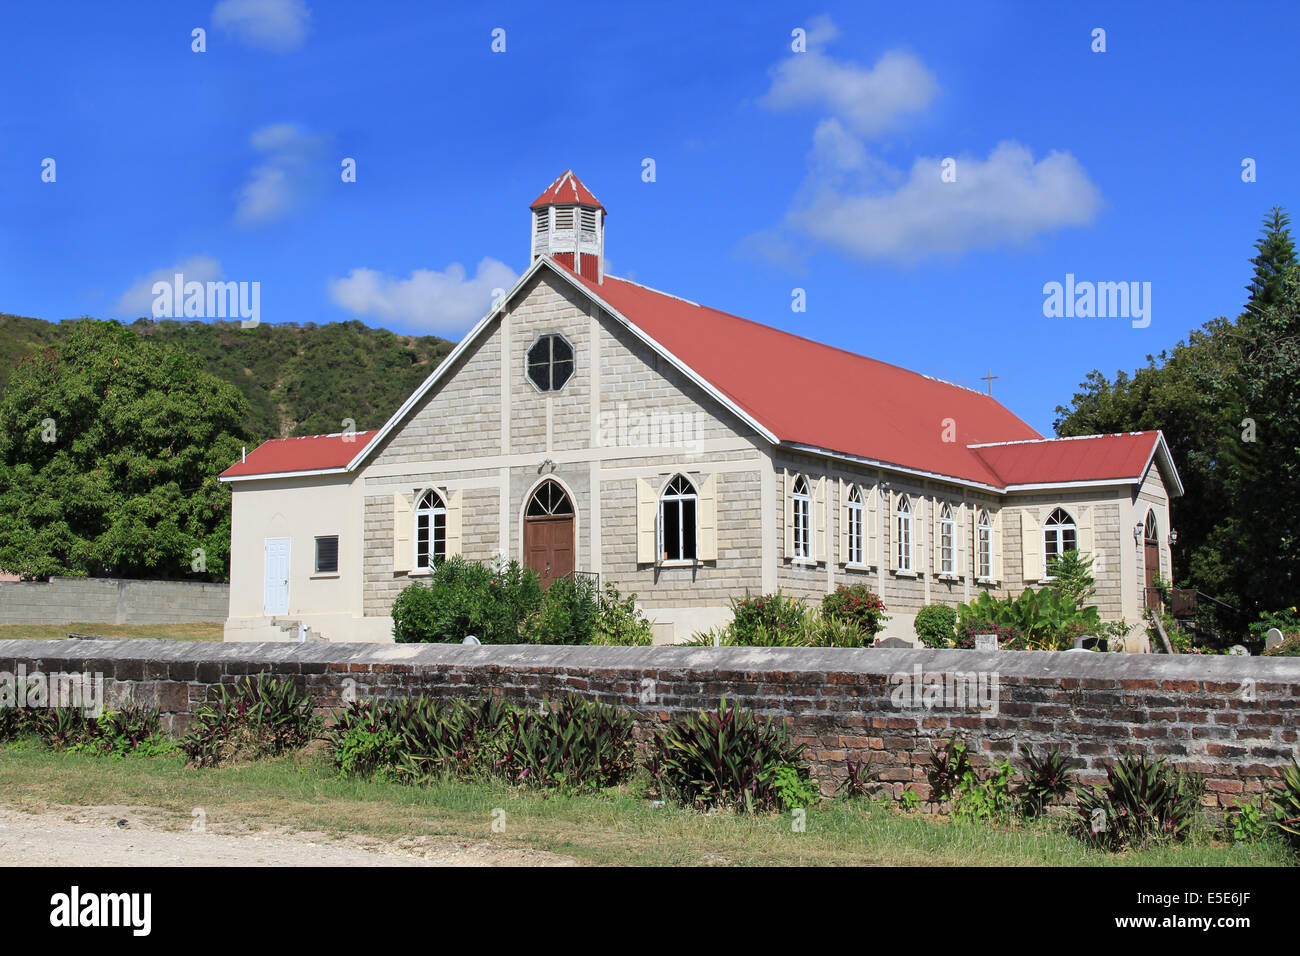 L'église anglicane St. Paul à St. John's Antigua et Barbuda dans les Caraïbes Petites Antilles Antilles. Banque D'Images